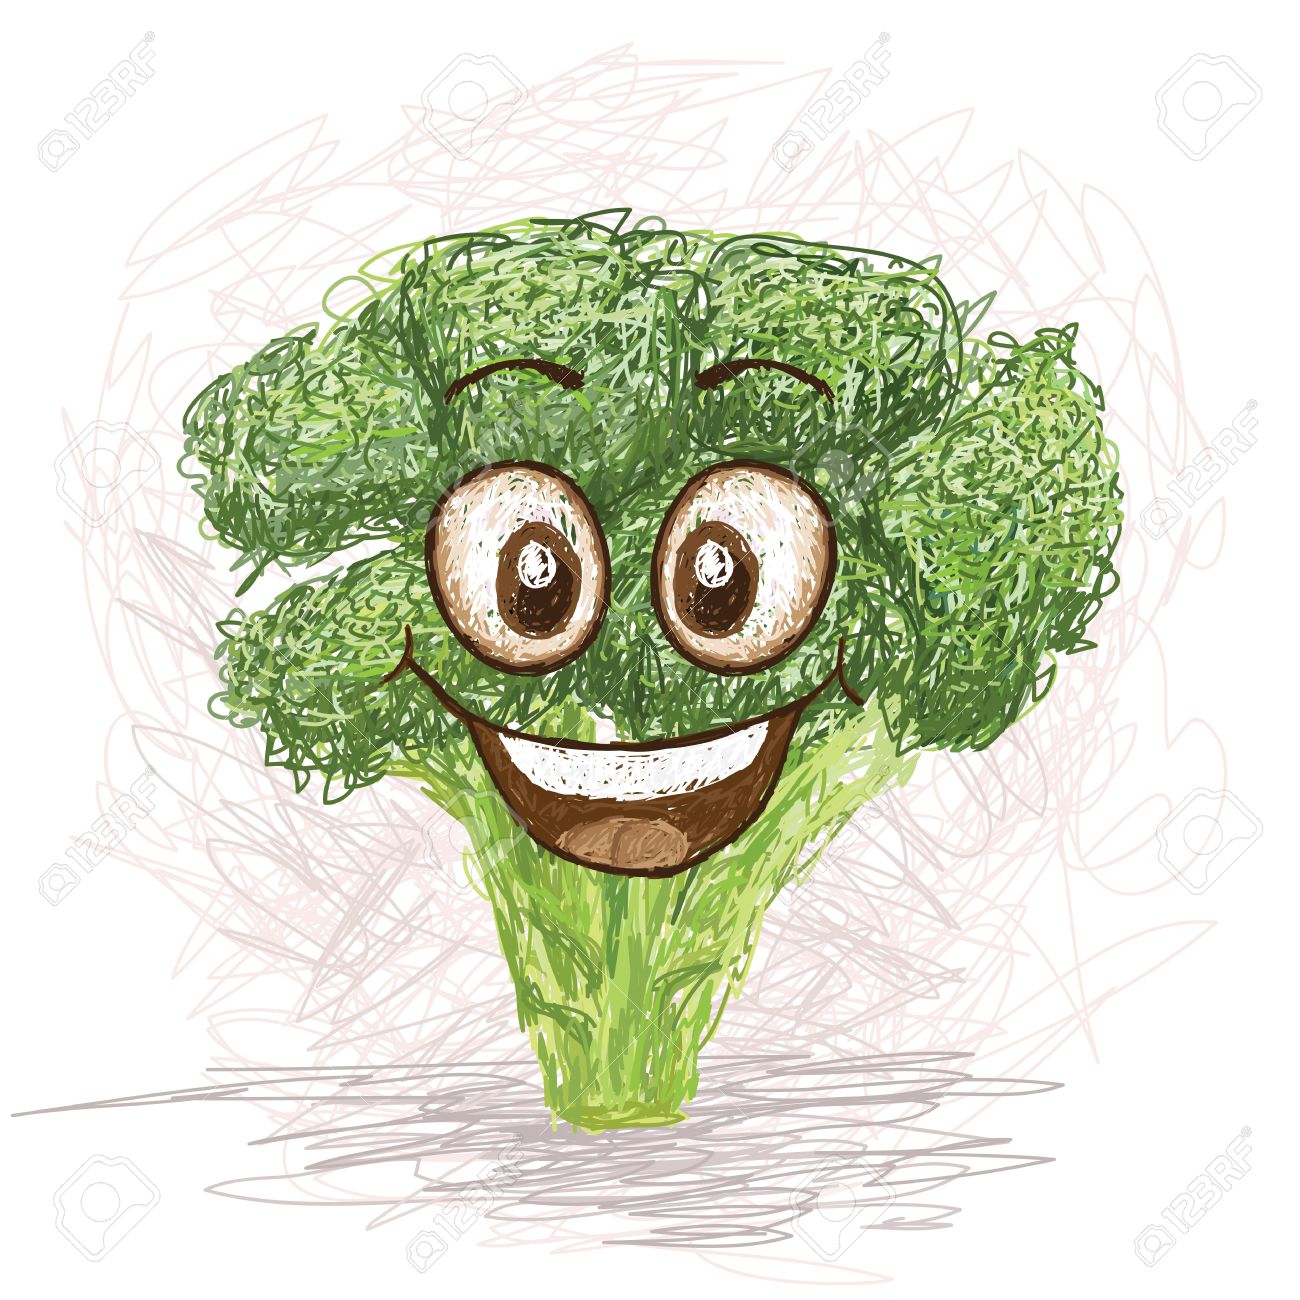 broccoli clipart happy